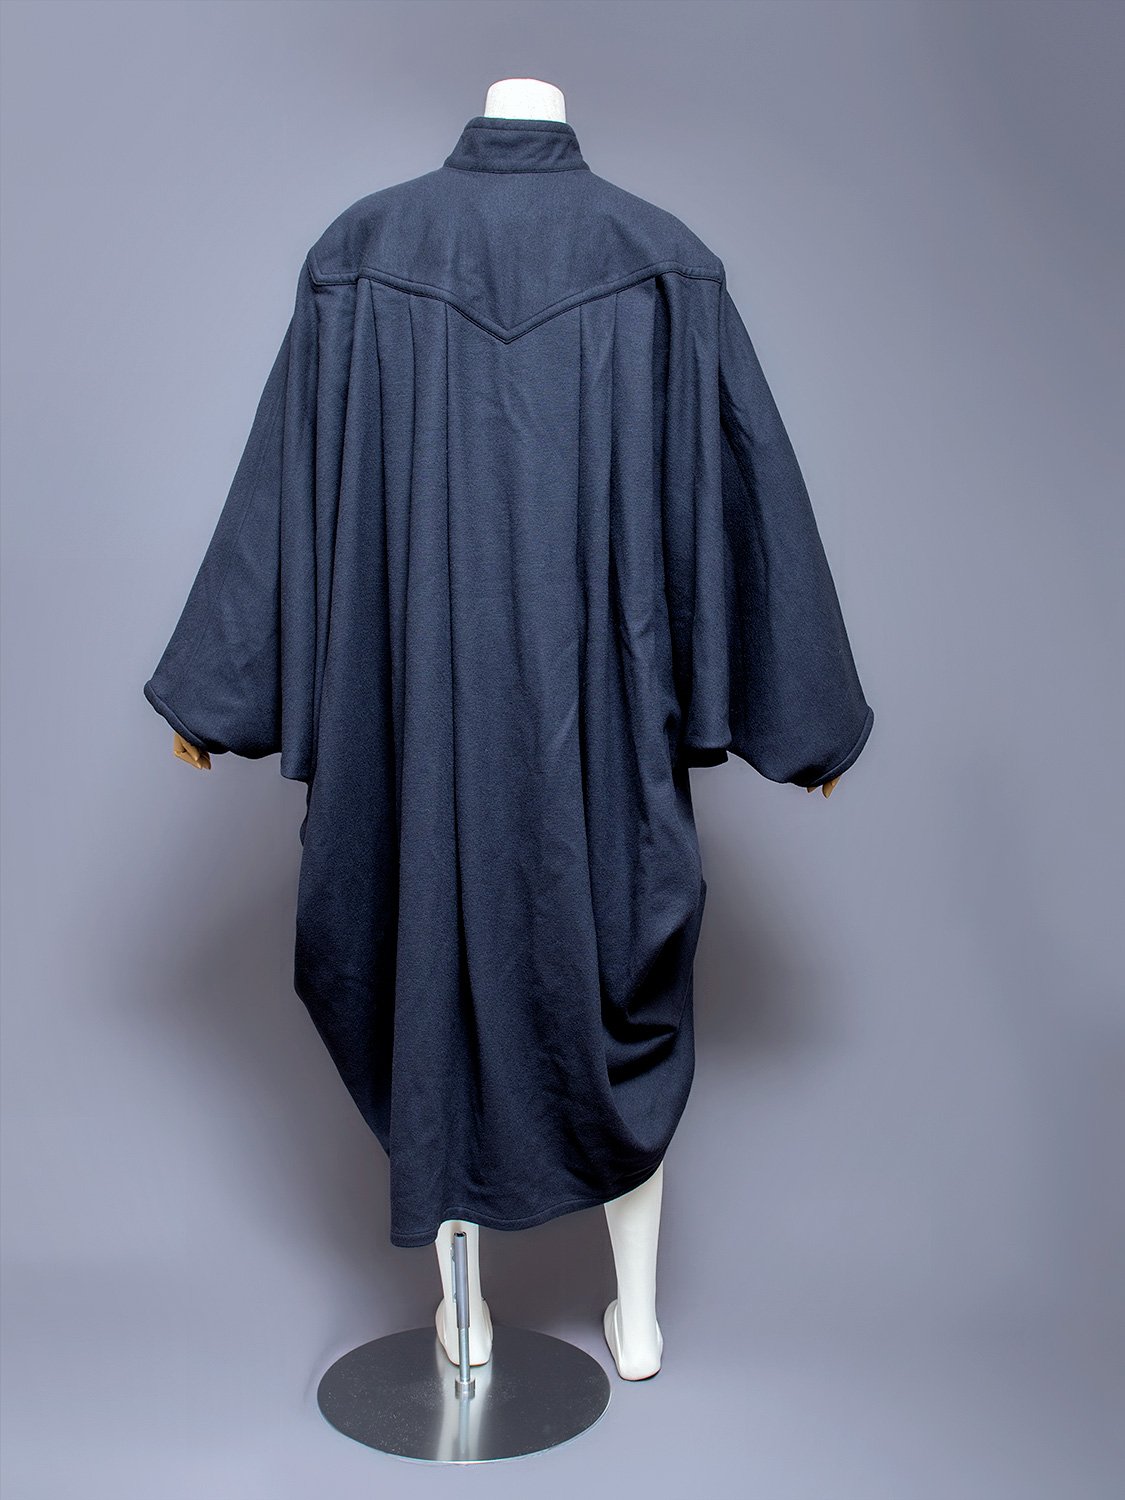 Christopher Nemeth Rope Pattern 3-Piece Linen Suit, 1980s-1990s